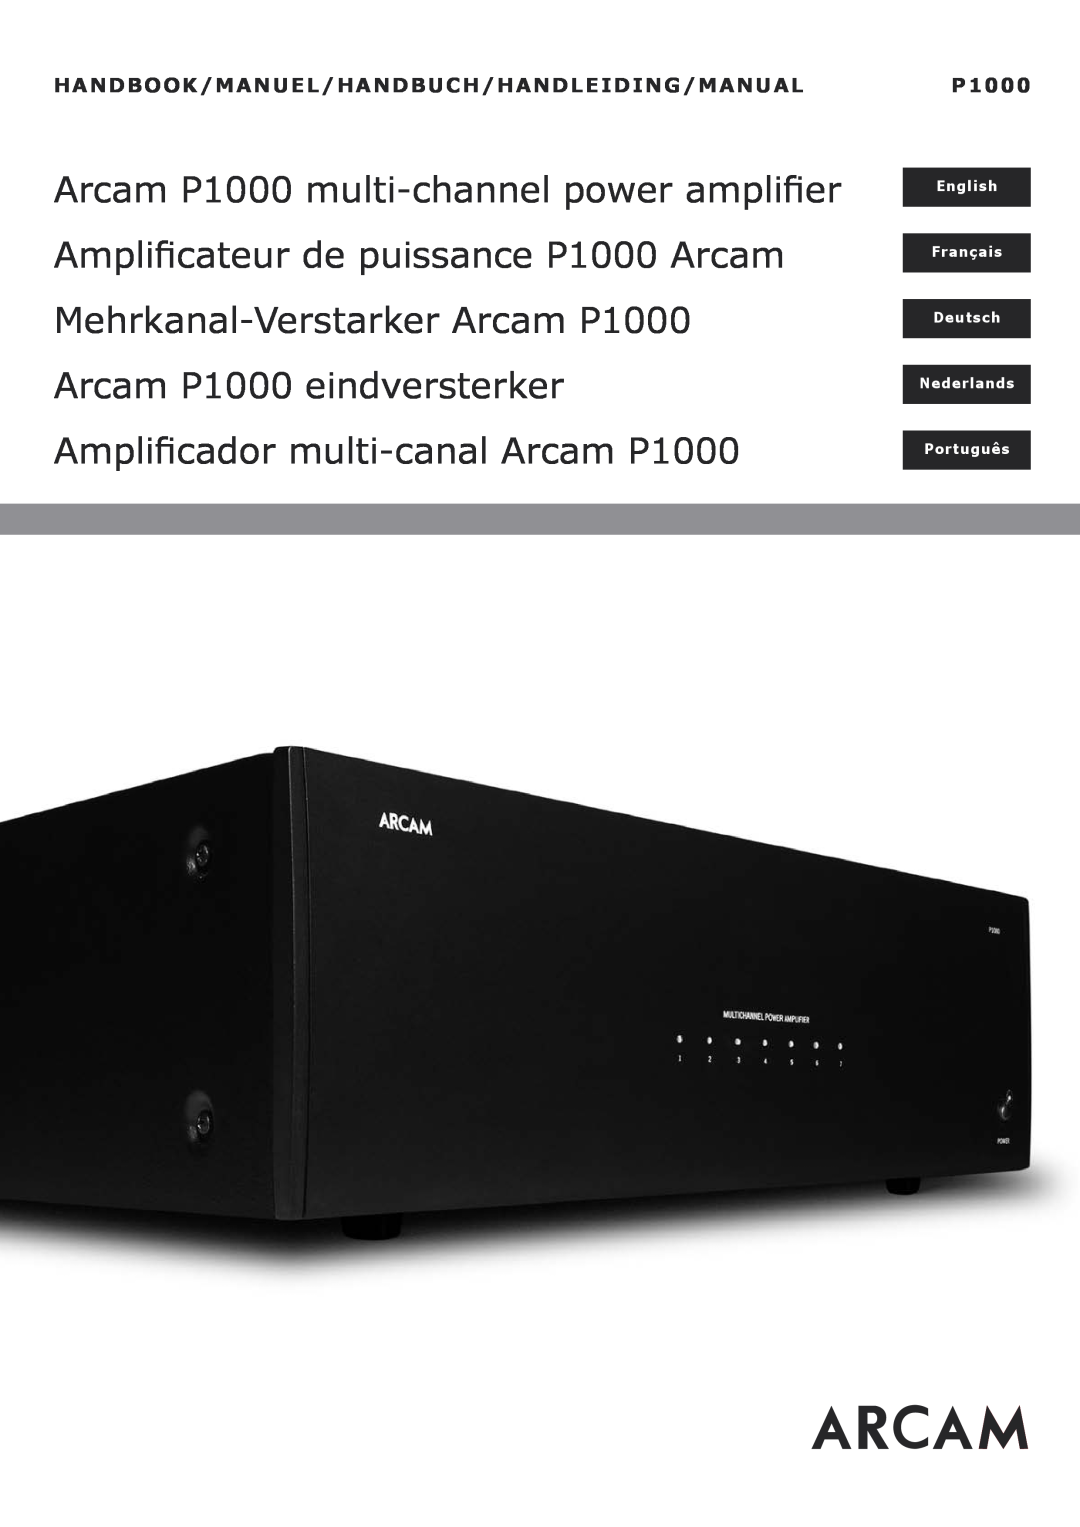 Arcam manual Arcam P1000 multi-channelpower amplifier, Amplificateur de puissance P1000 Arcam, English, Français 